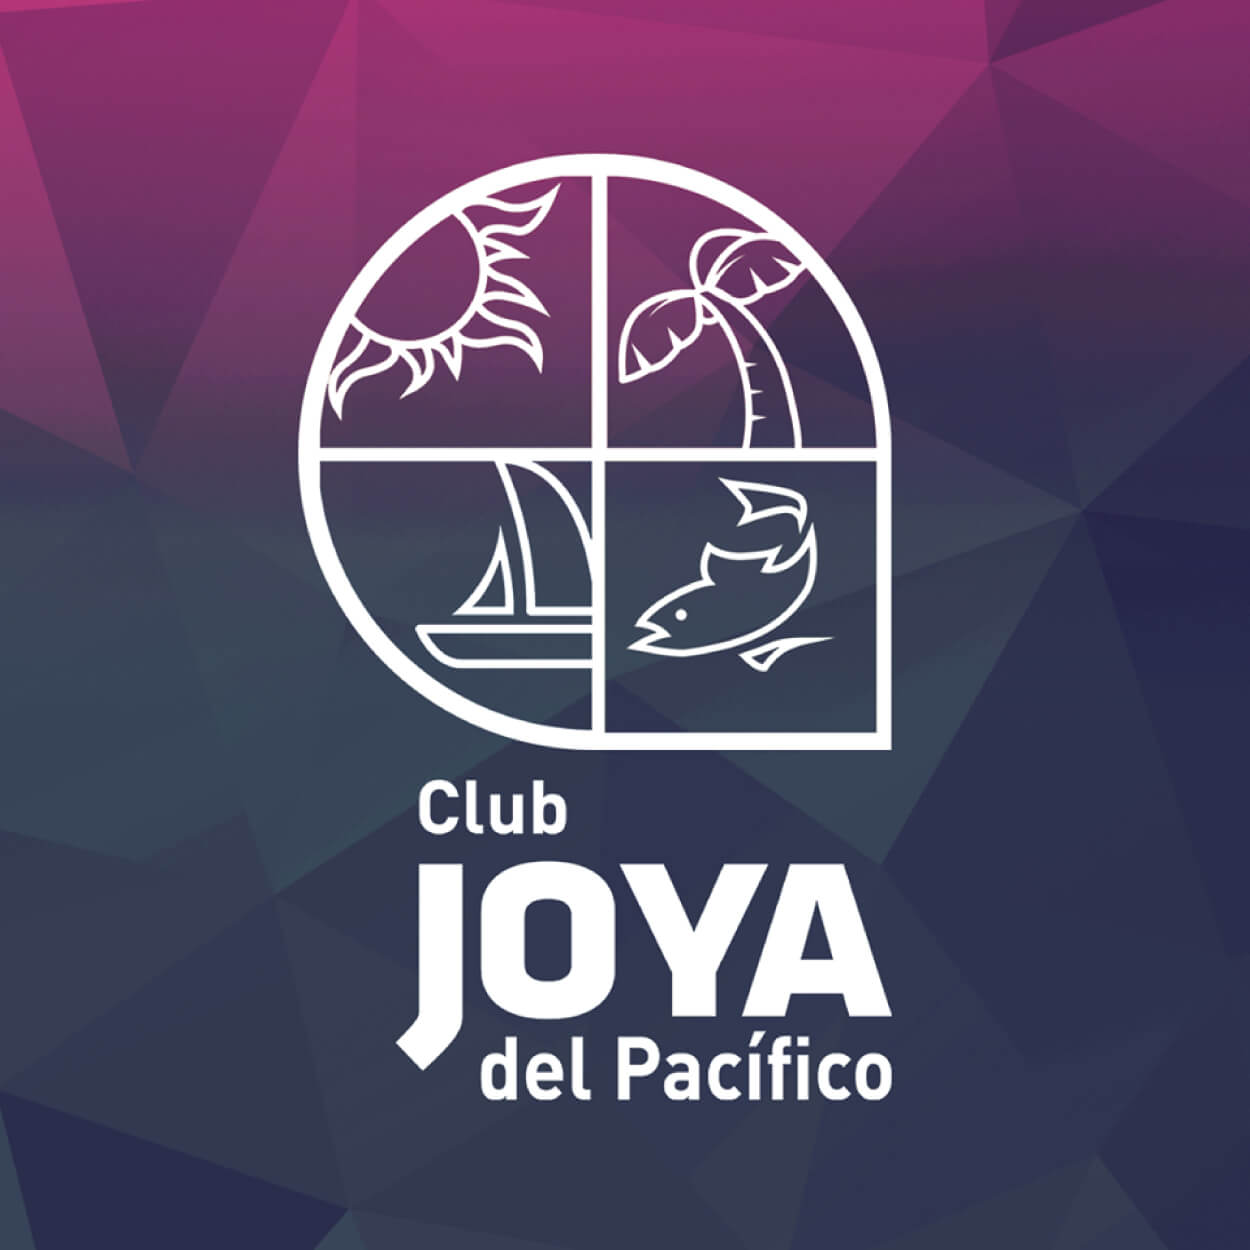 Club Joya del Pacifico